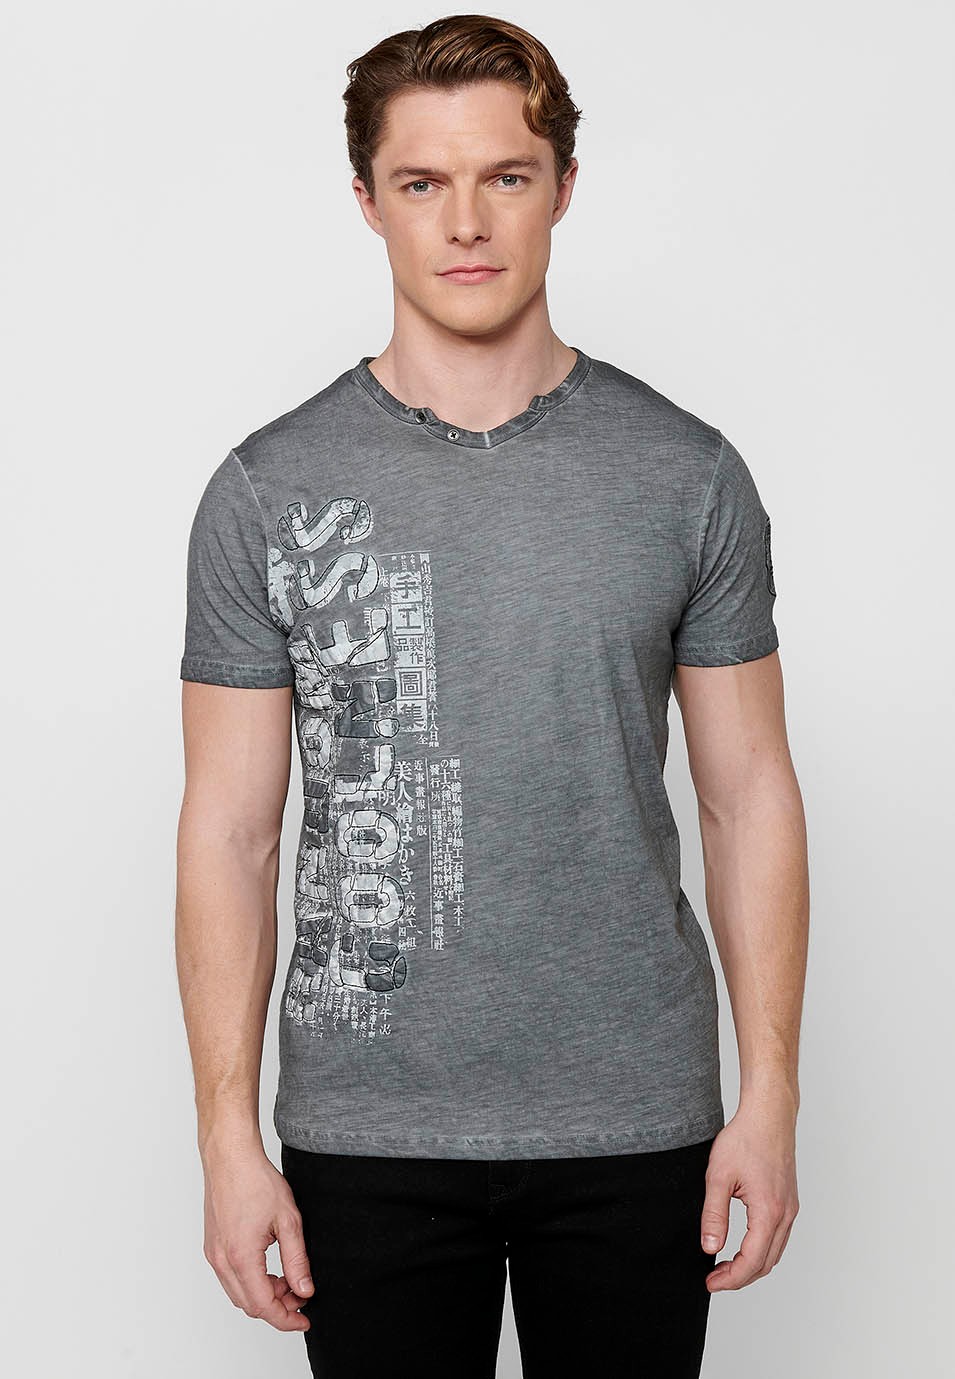 Camiseta de algodón manga corta, cuello pico con adorno de botones, color gris para hombre